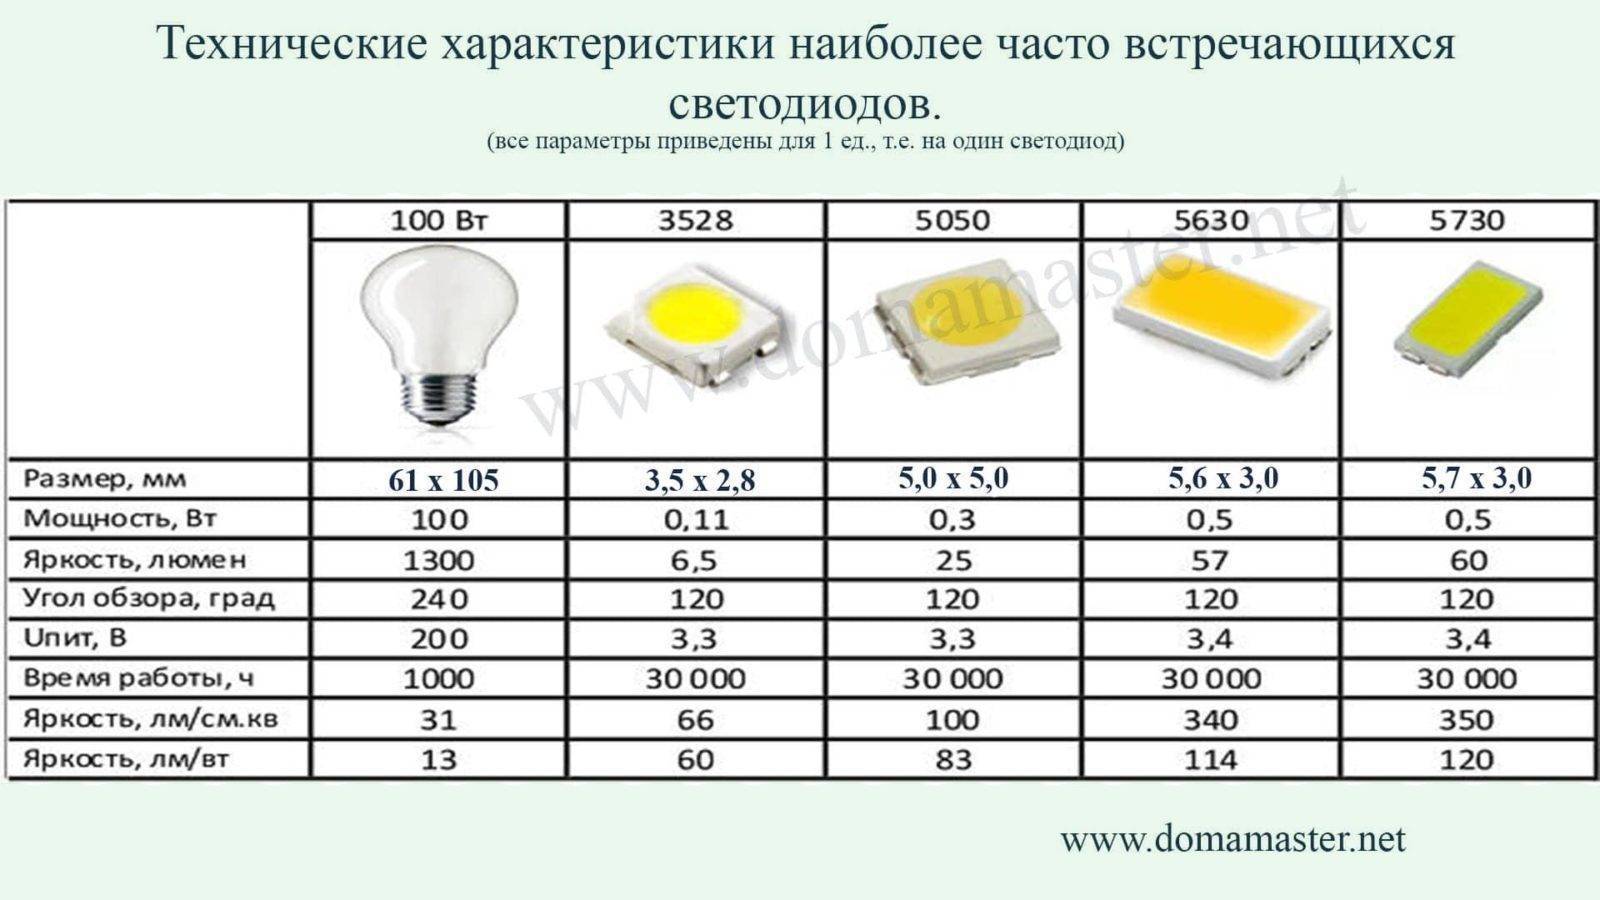 Почему не стоит покупать дешевые светодиодные лампочки?| ichip.ru